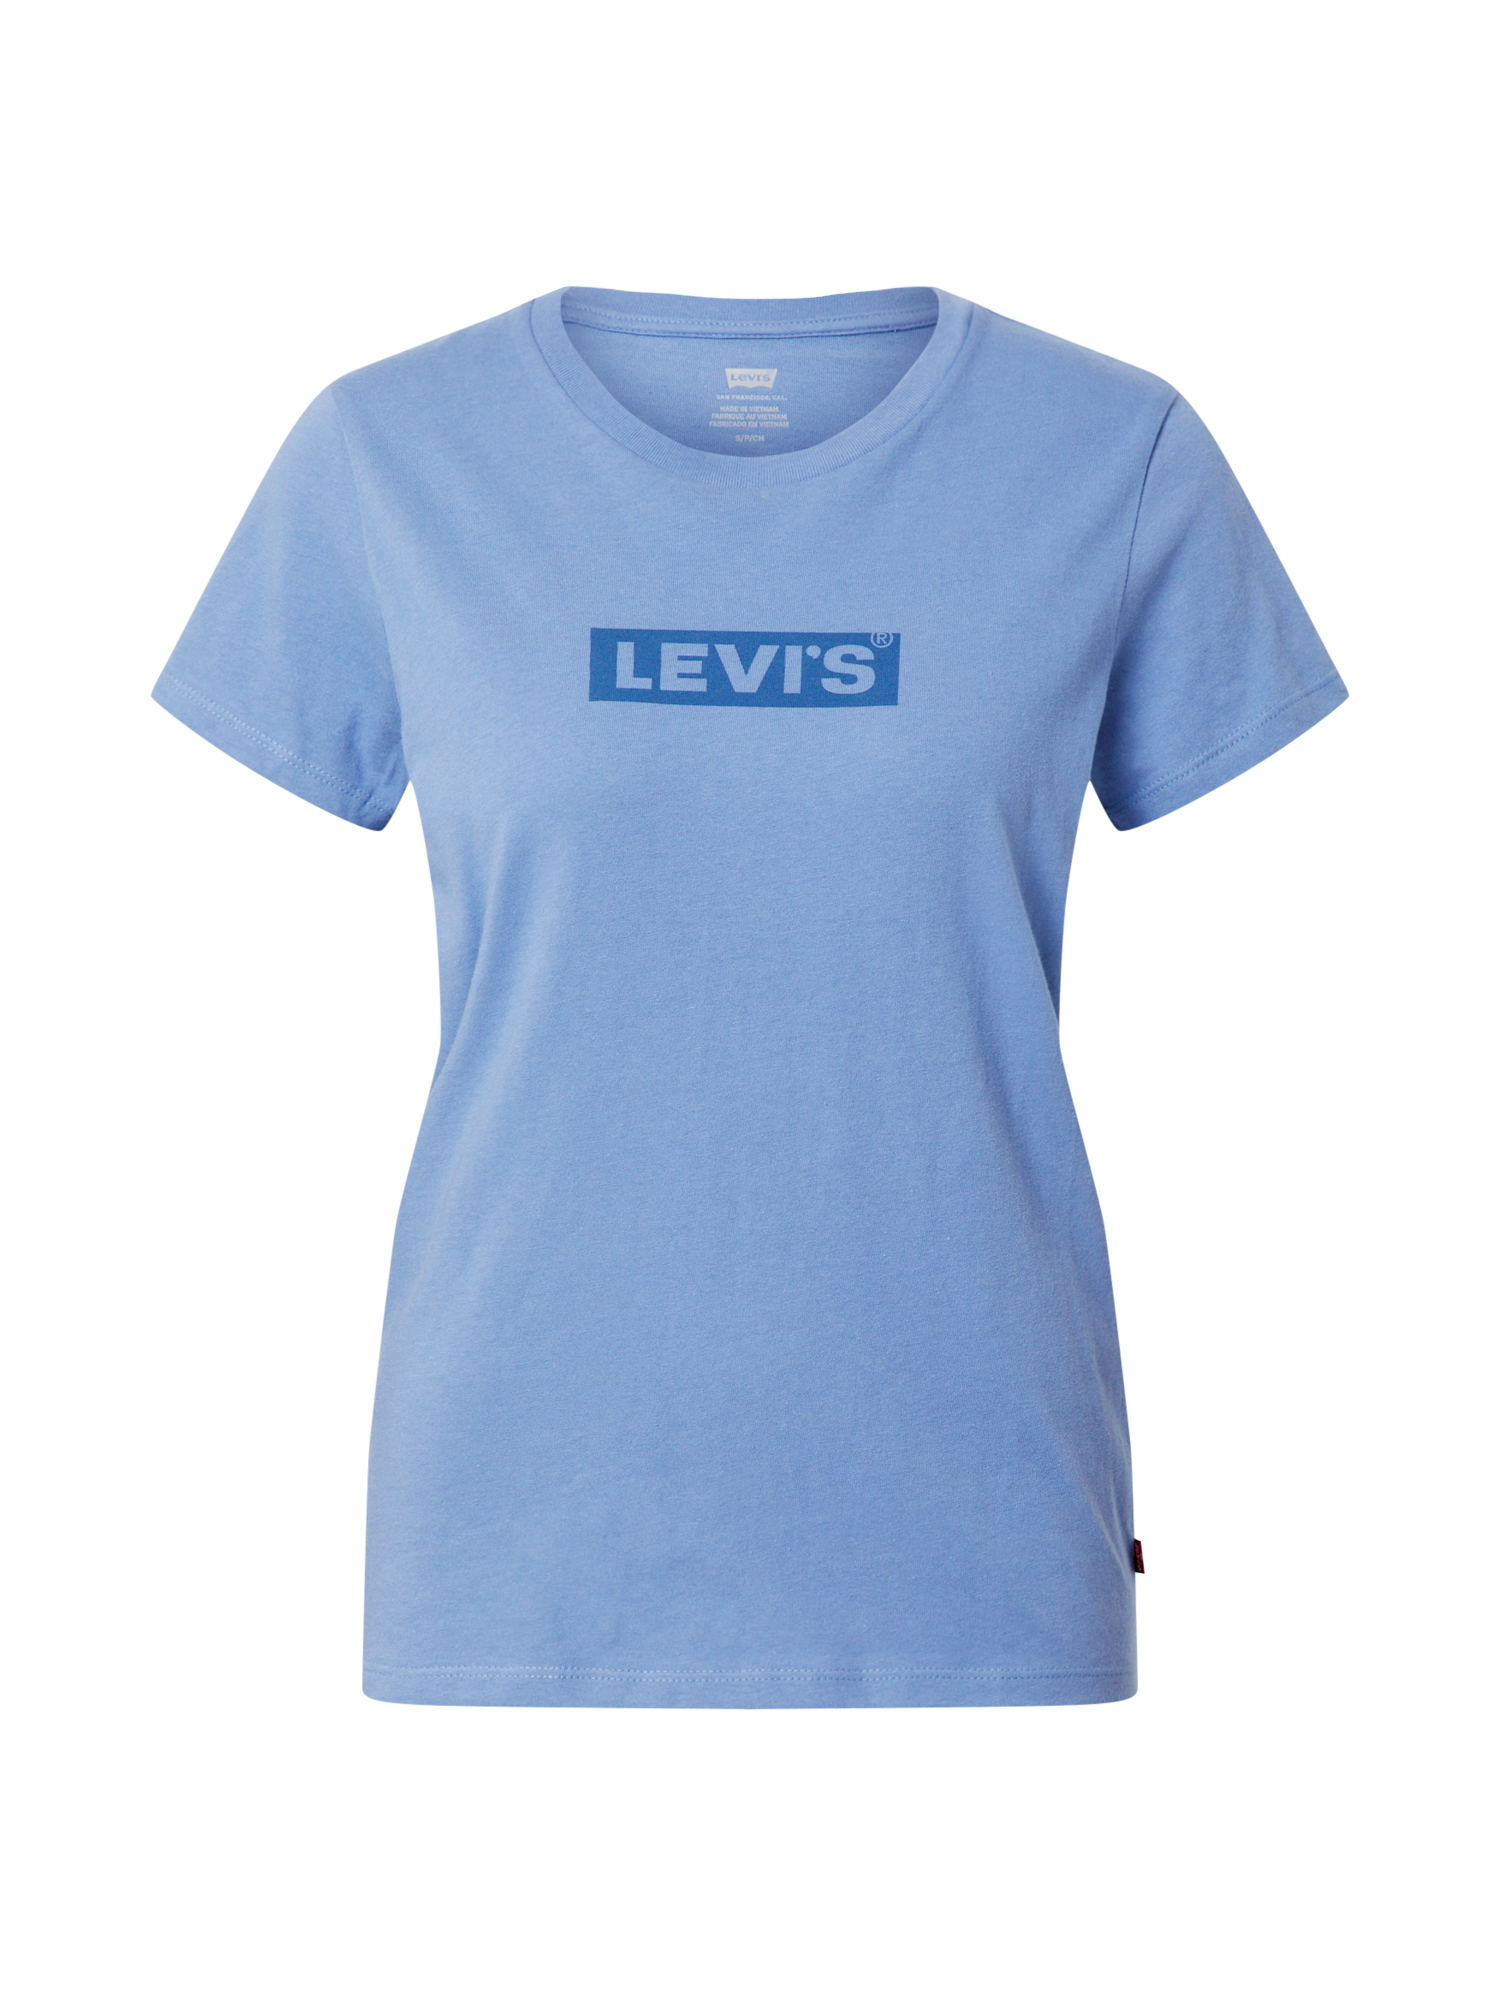 Odzież Kobiety LEVIS Koszulka w kolorze Niebieski, Podpalany Niebieskim 